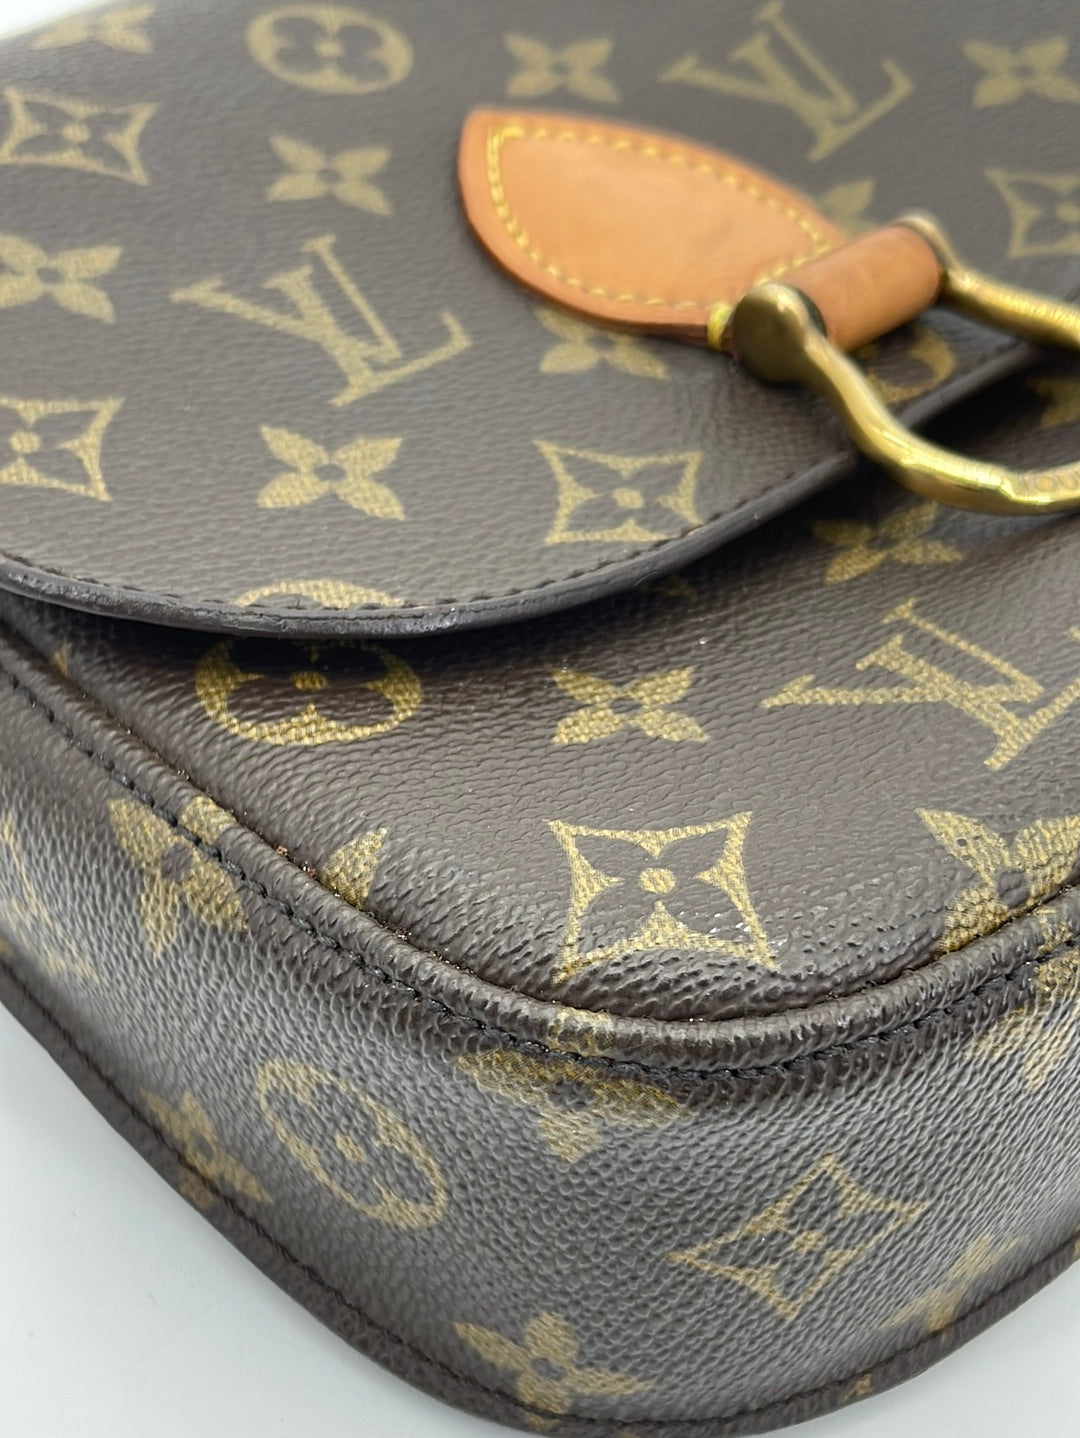 Shop authentic Louis Vuitton Pégase 55 at revogue for just USD